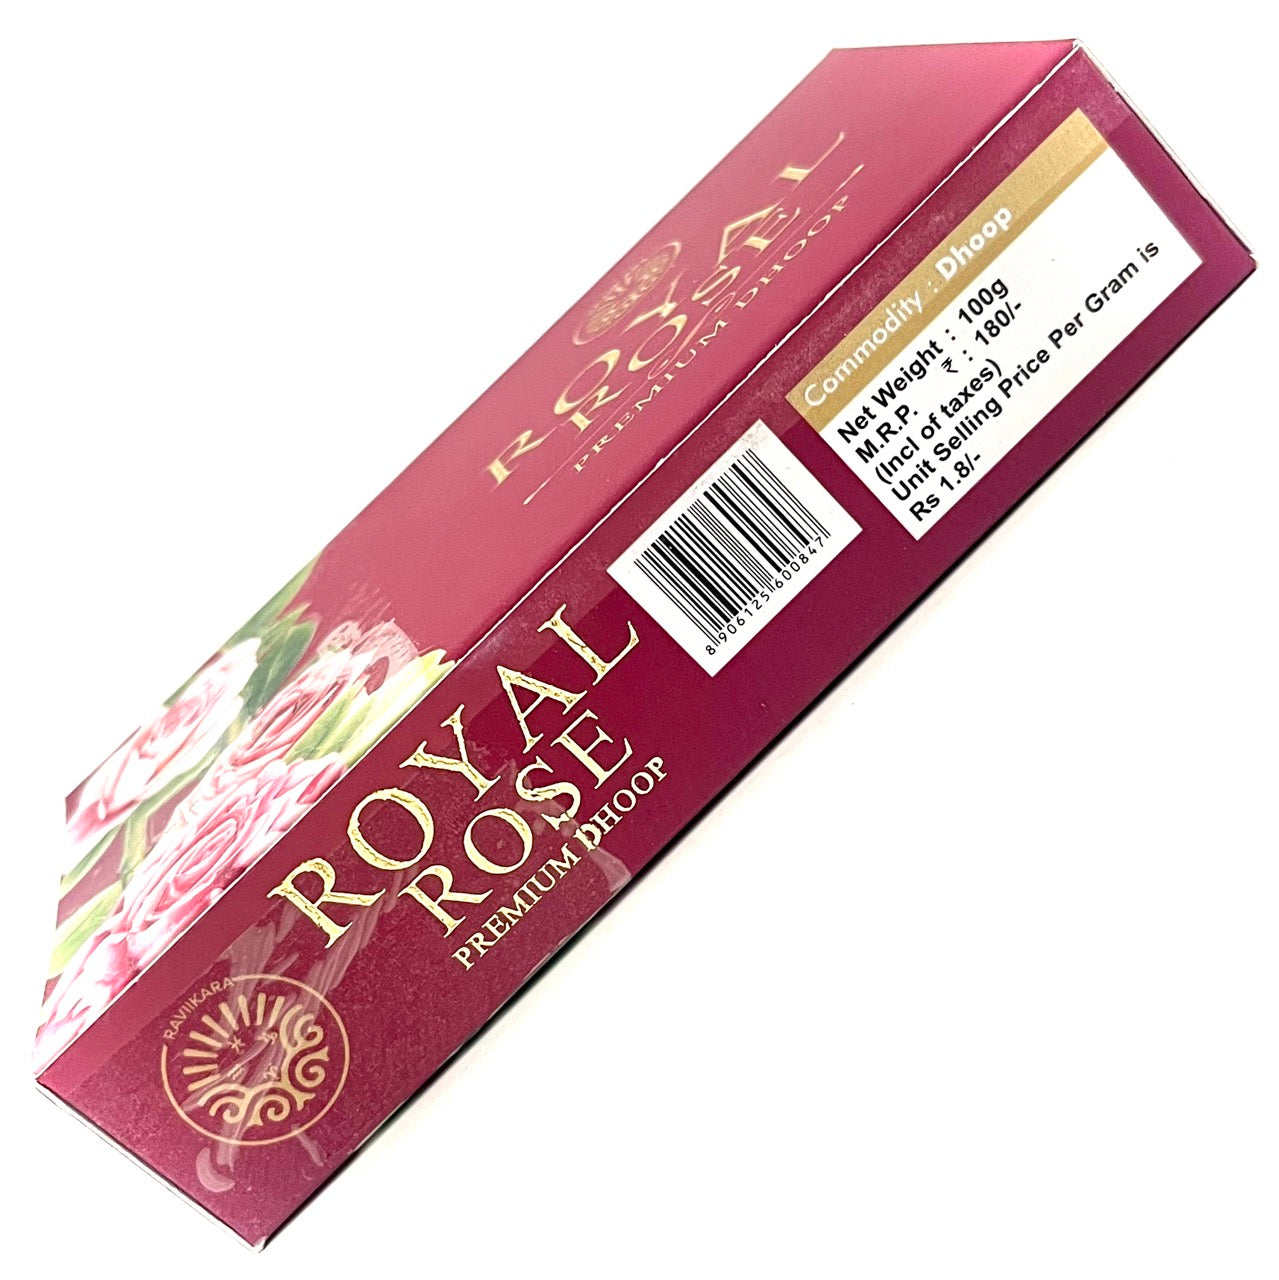 Raviikara Royal ROSE Premium Wet Dhoop (100 gms)